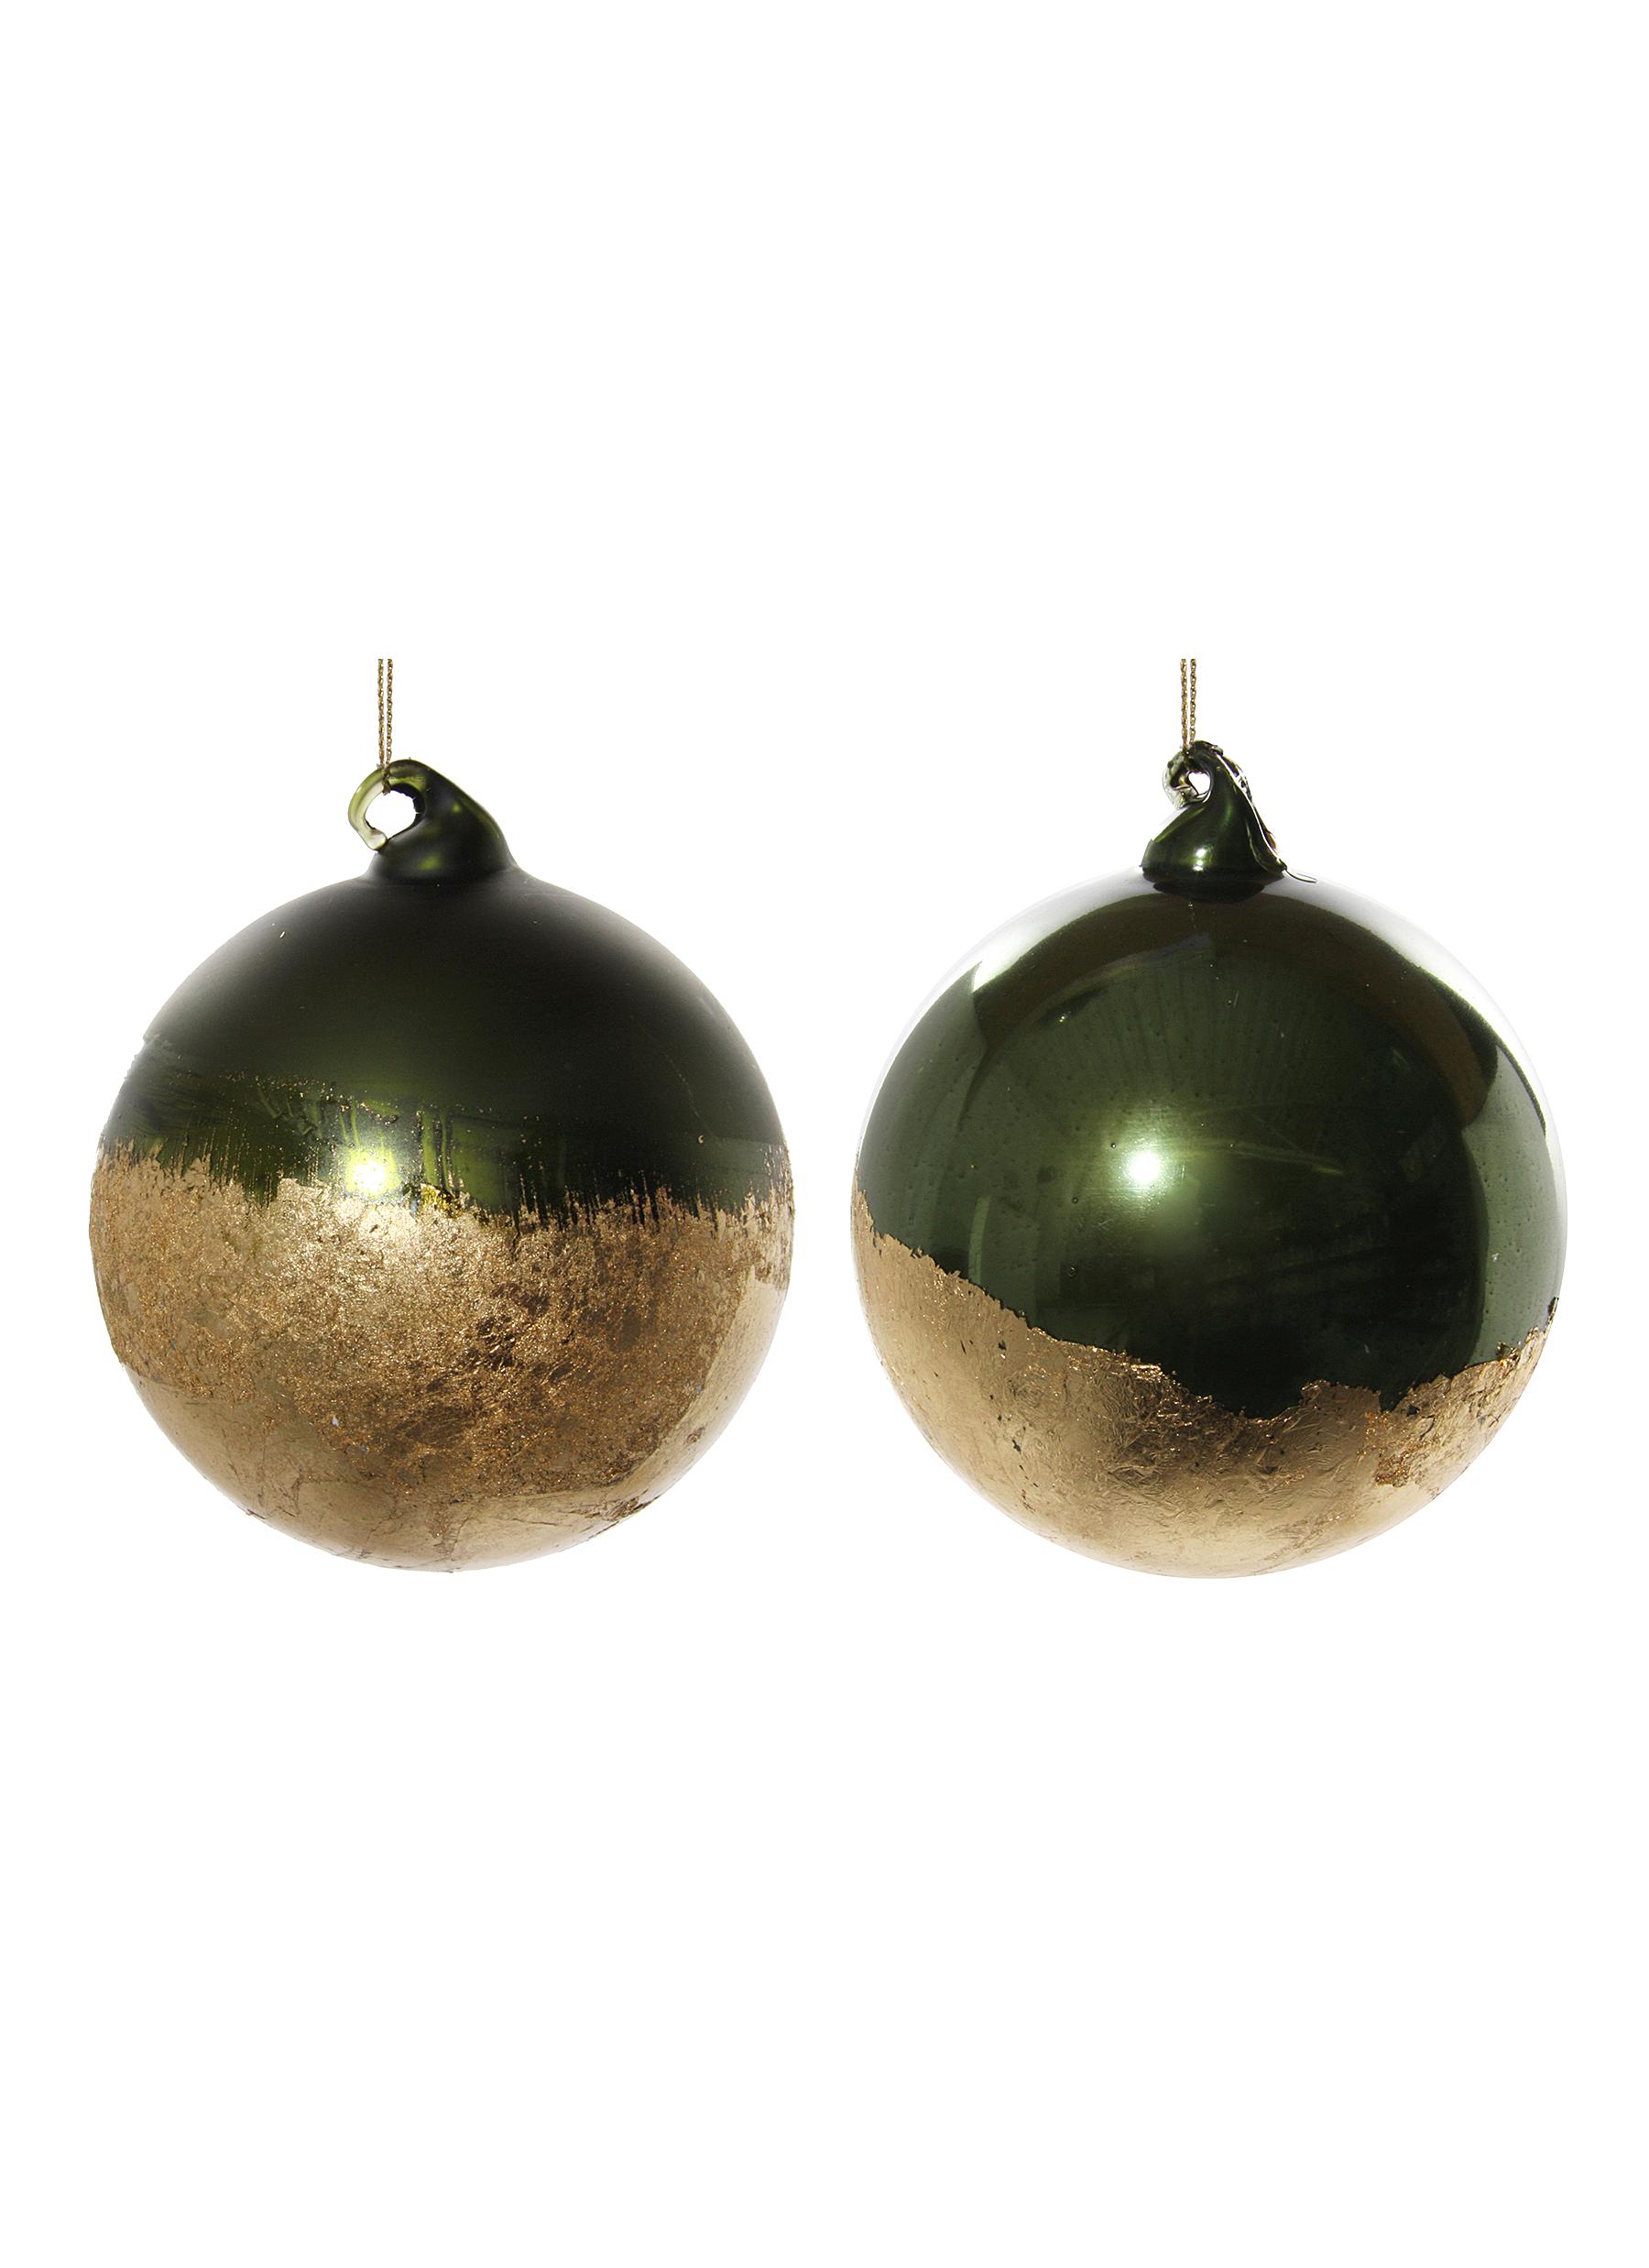 Gold Foil Glass Ball Ornament - Green/Gold